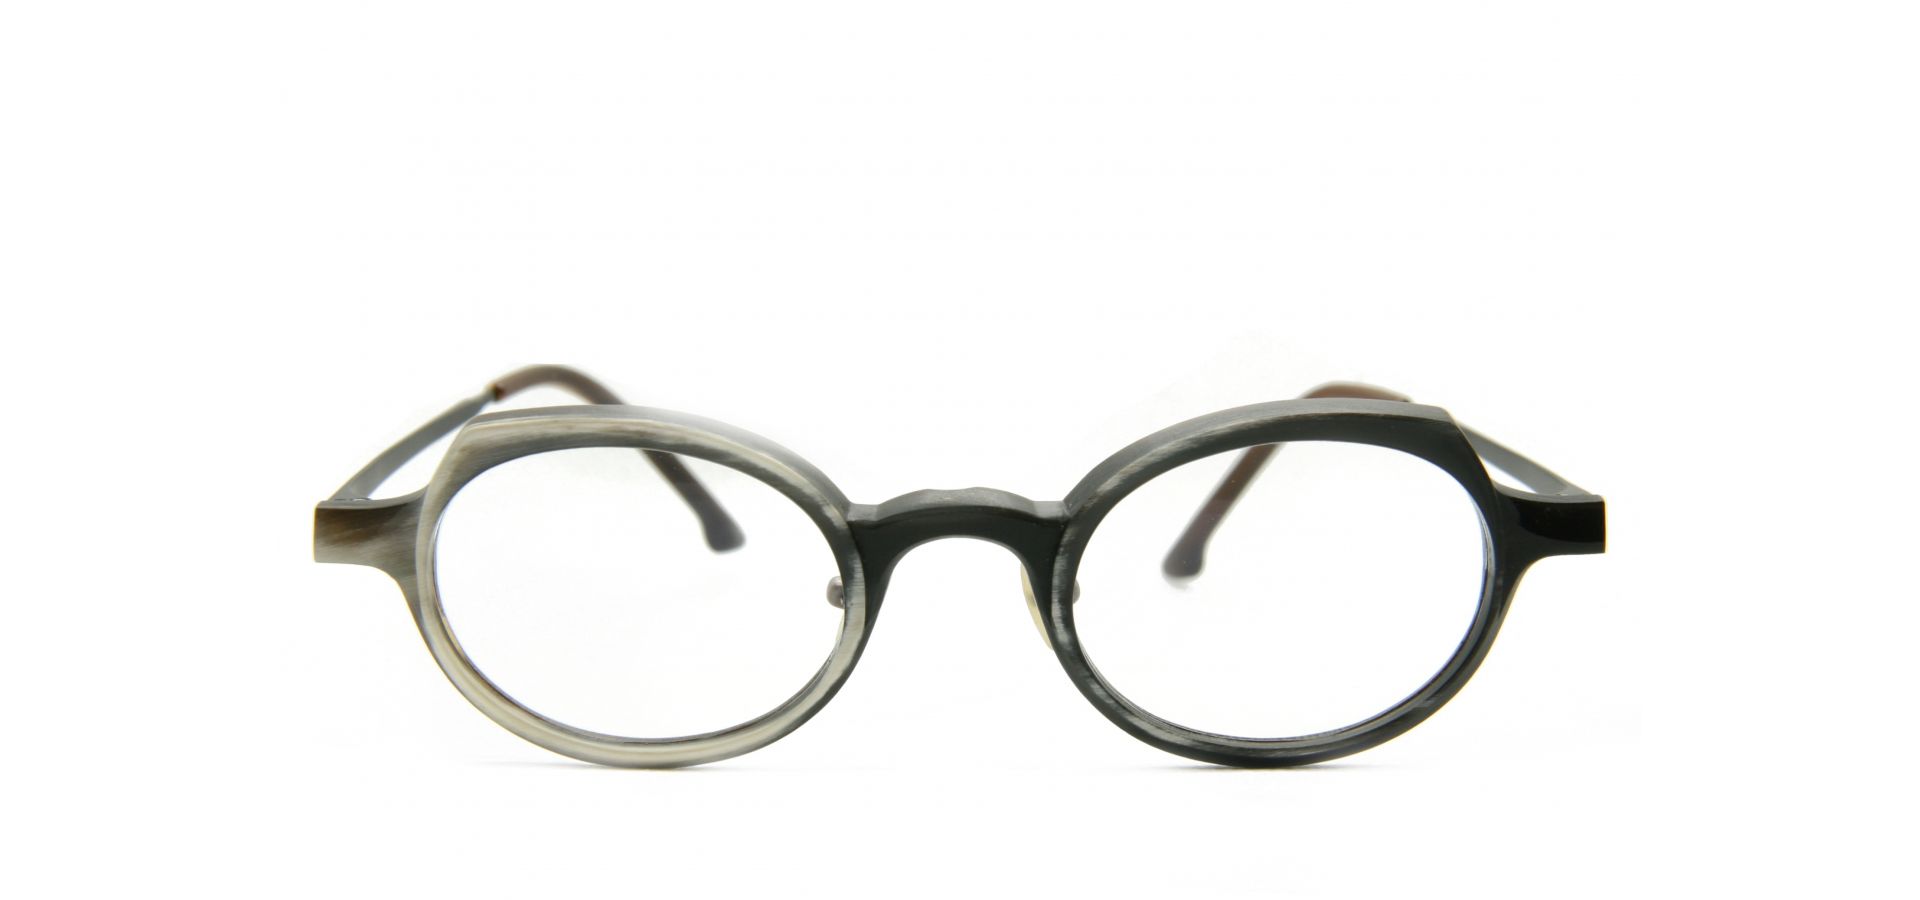 Korekcijska očala Rigards RG0090 A137 GENUINE HORN: Velikost: 45/24/143, Spol: unisex, Material: rog/titan/acetat